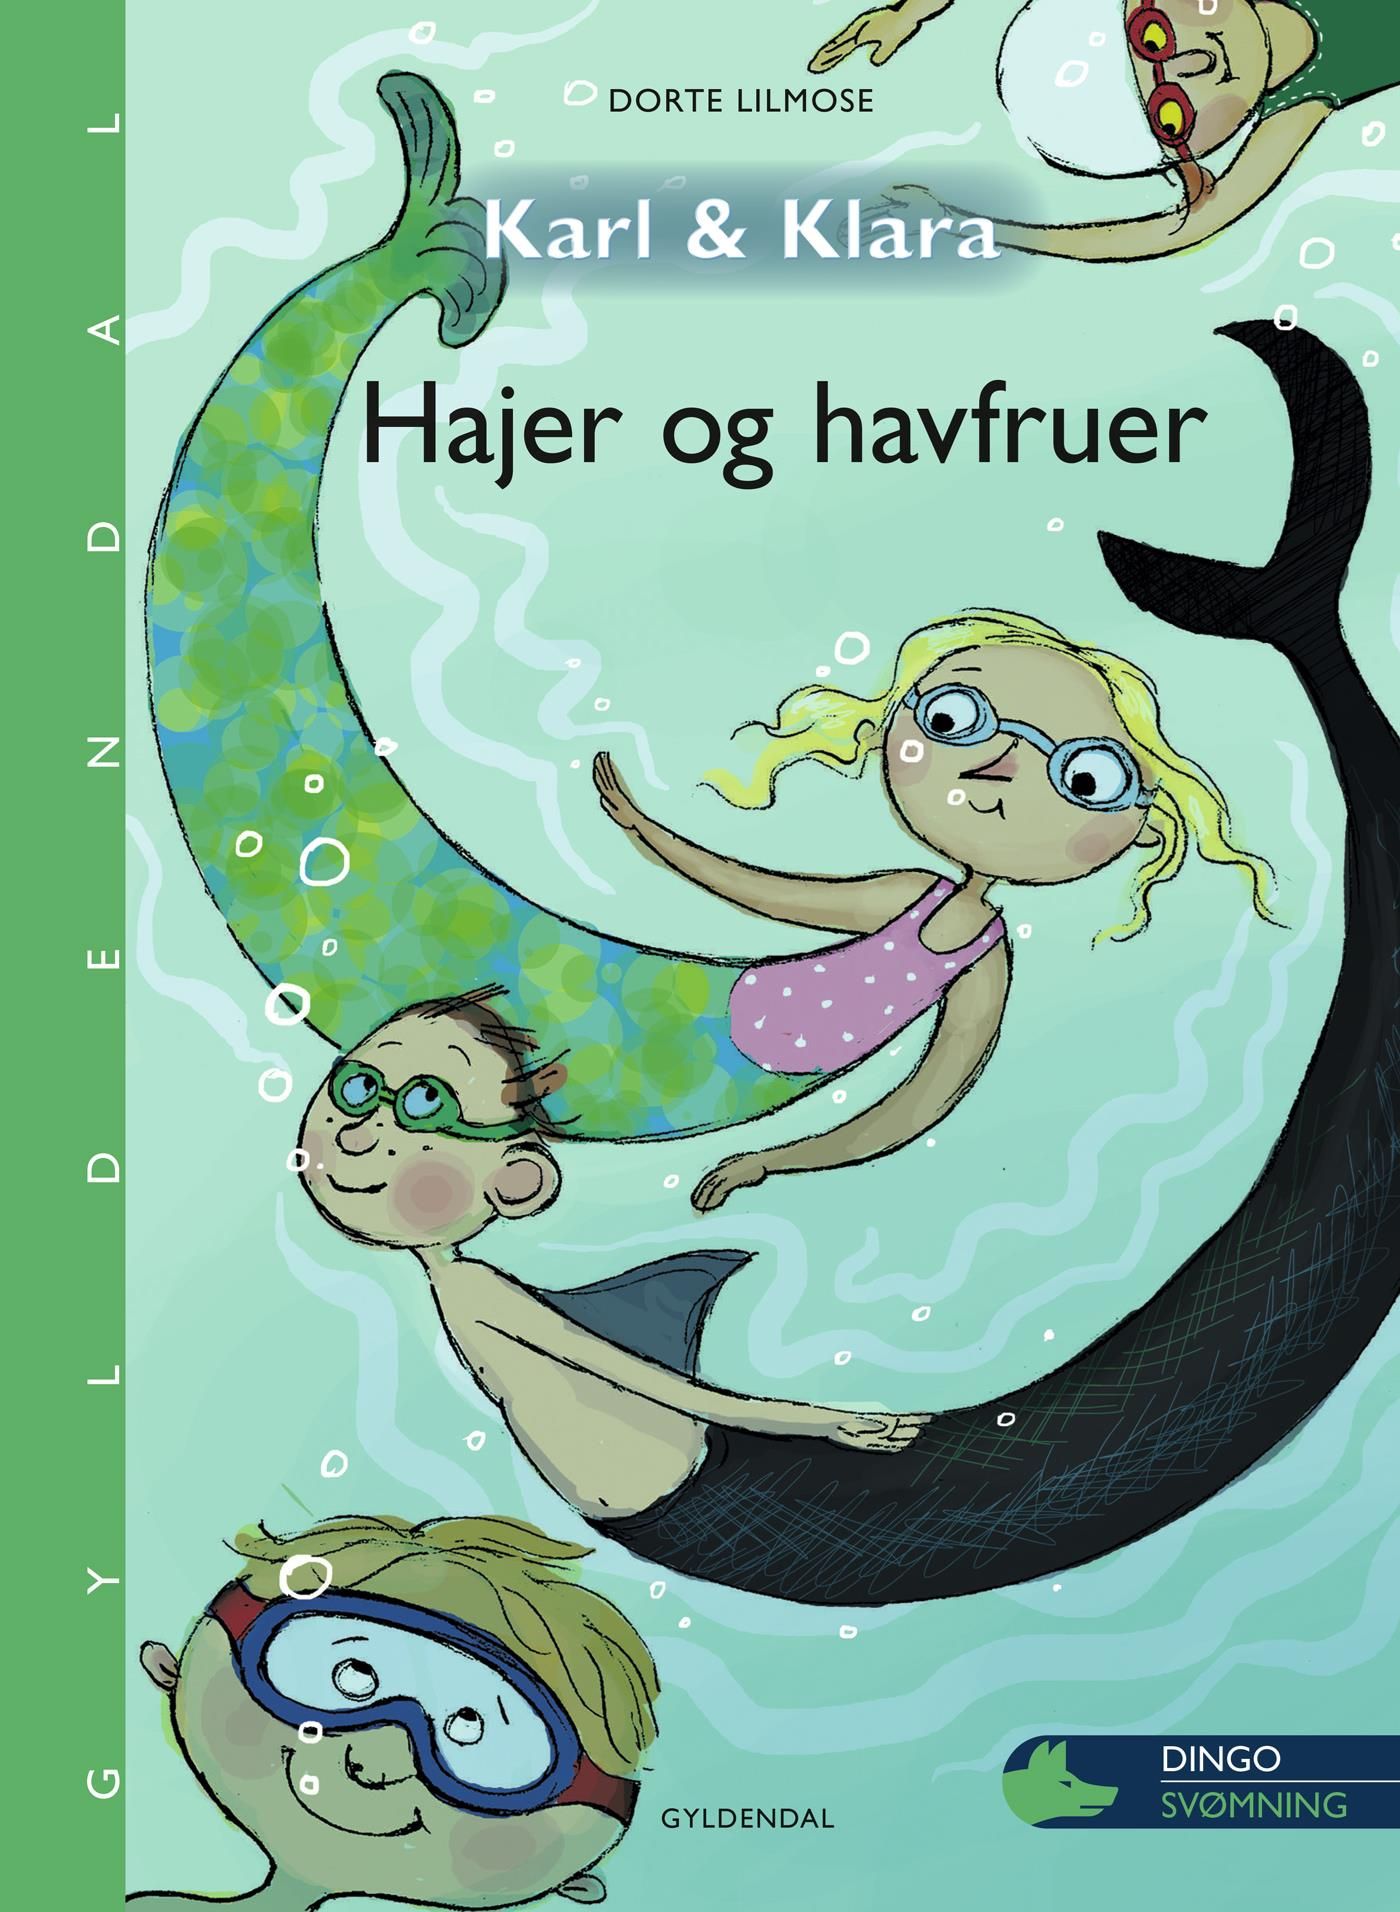 Karl og Klara - Hajer og havfruer, e-bog af Dorte Lilmose